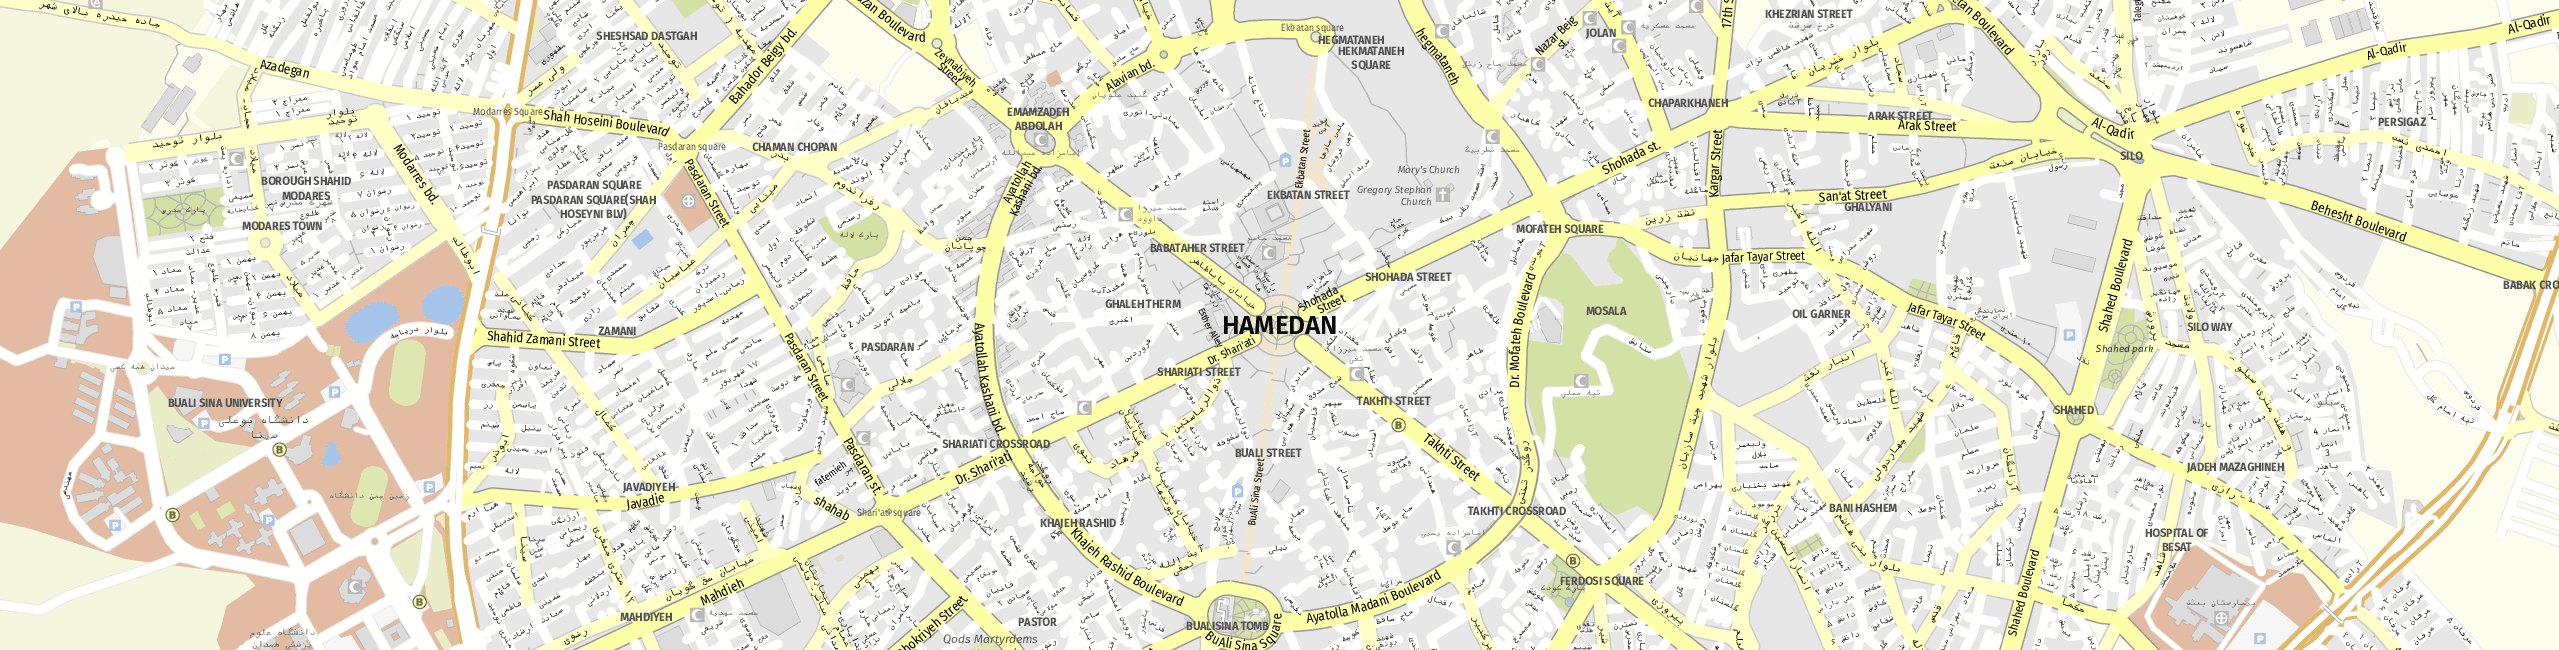 Stadtplan Hamedan zum Downloaden.